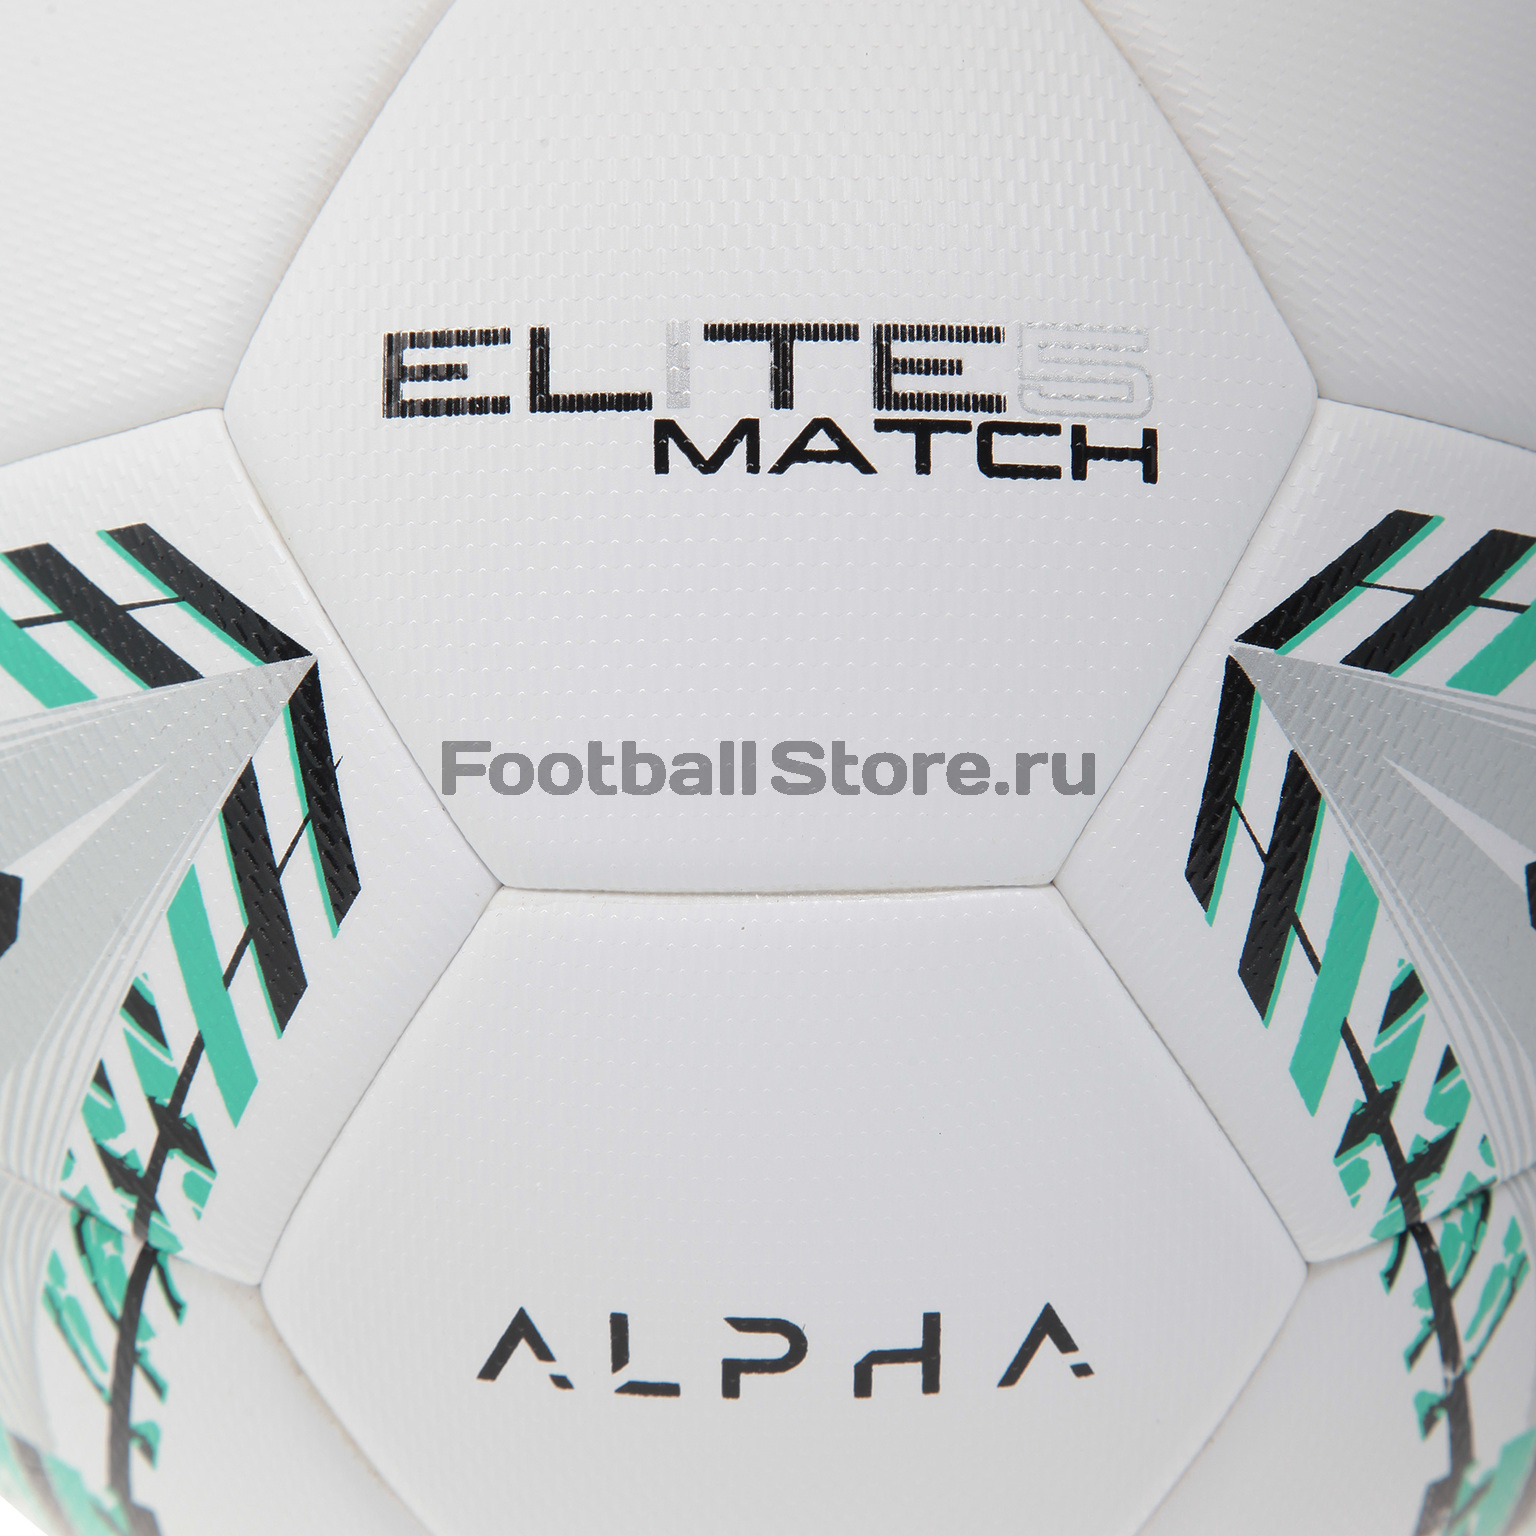 Футбольный мяч AlphaKeepers Elite Match 81017M5